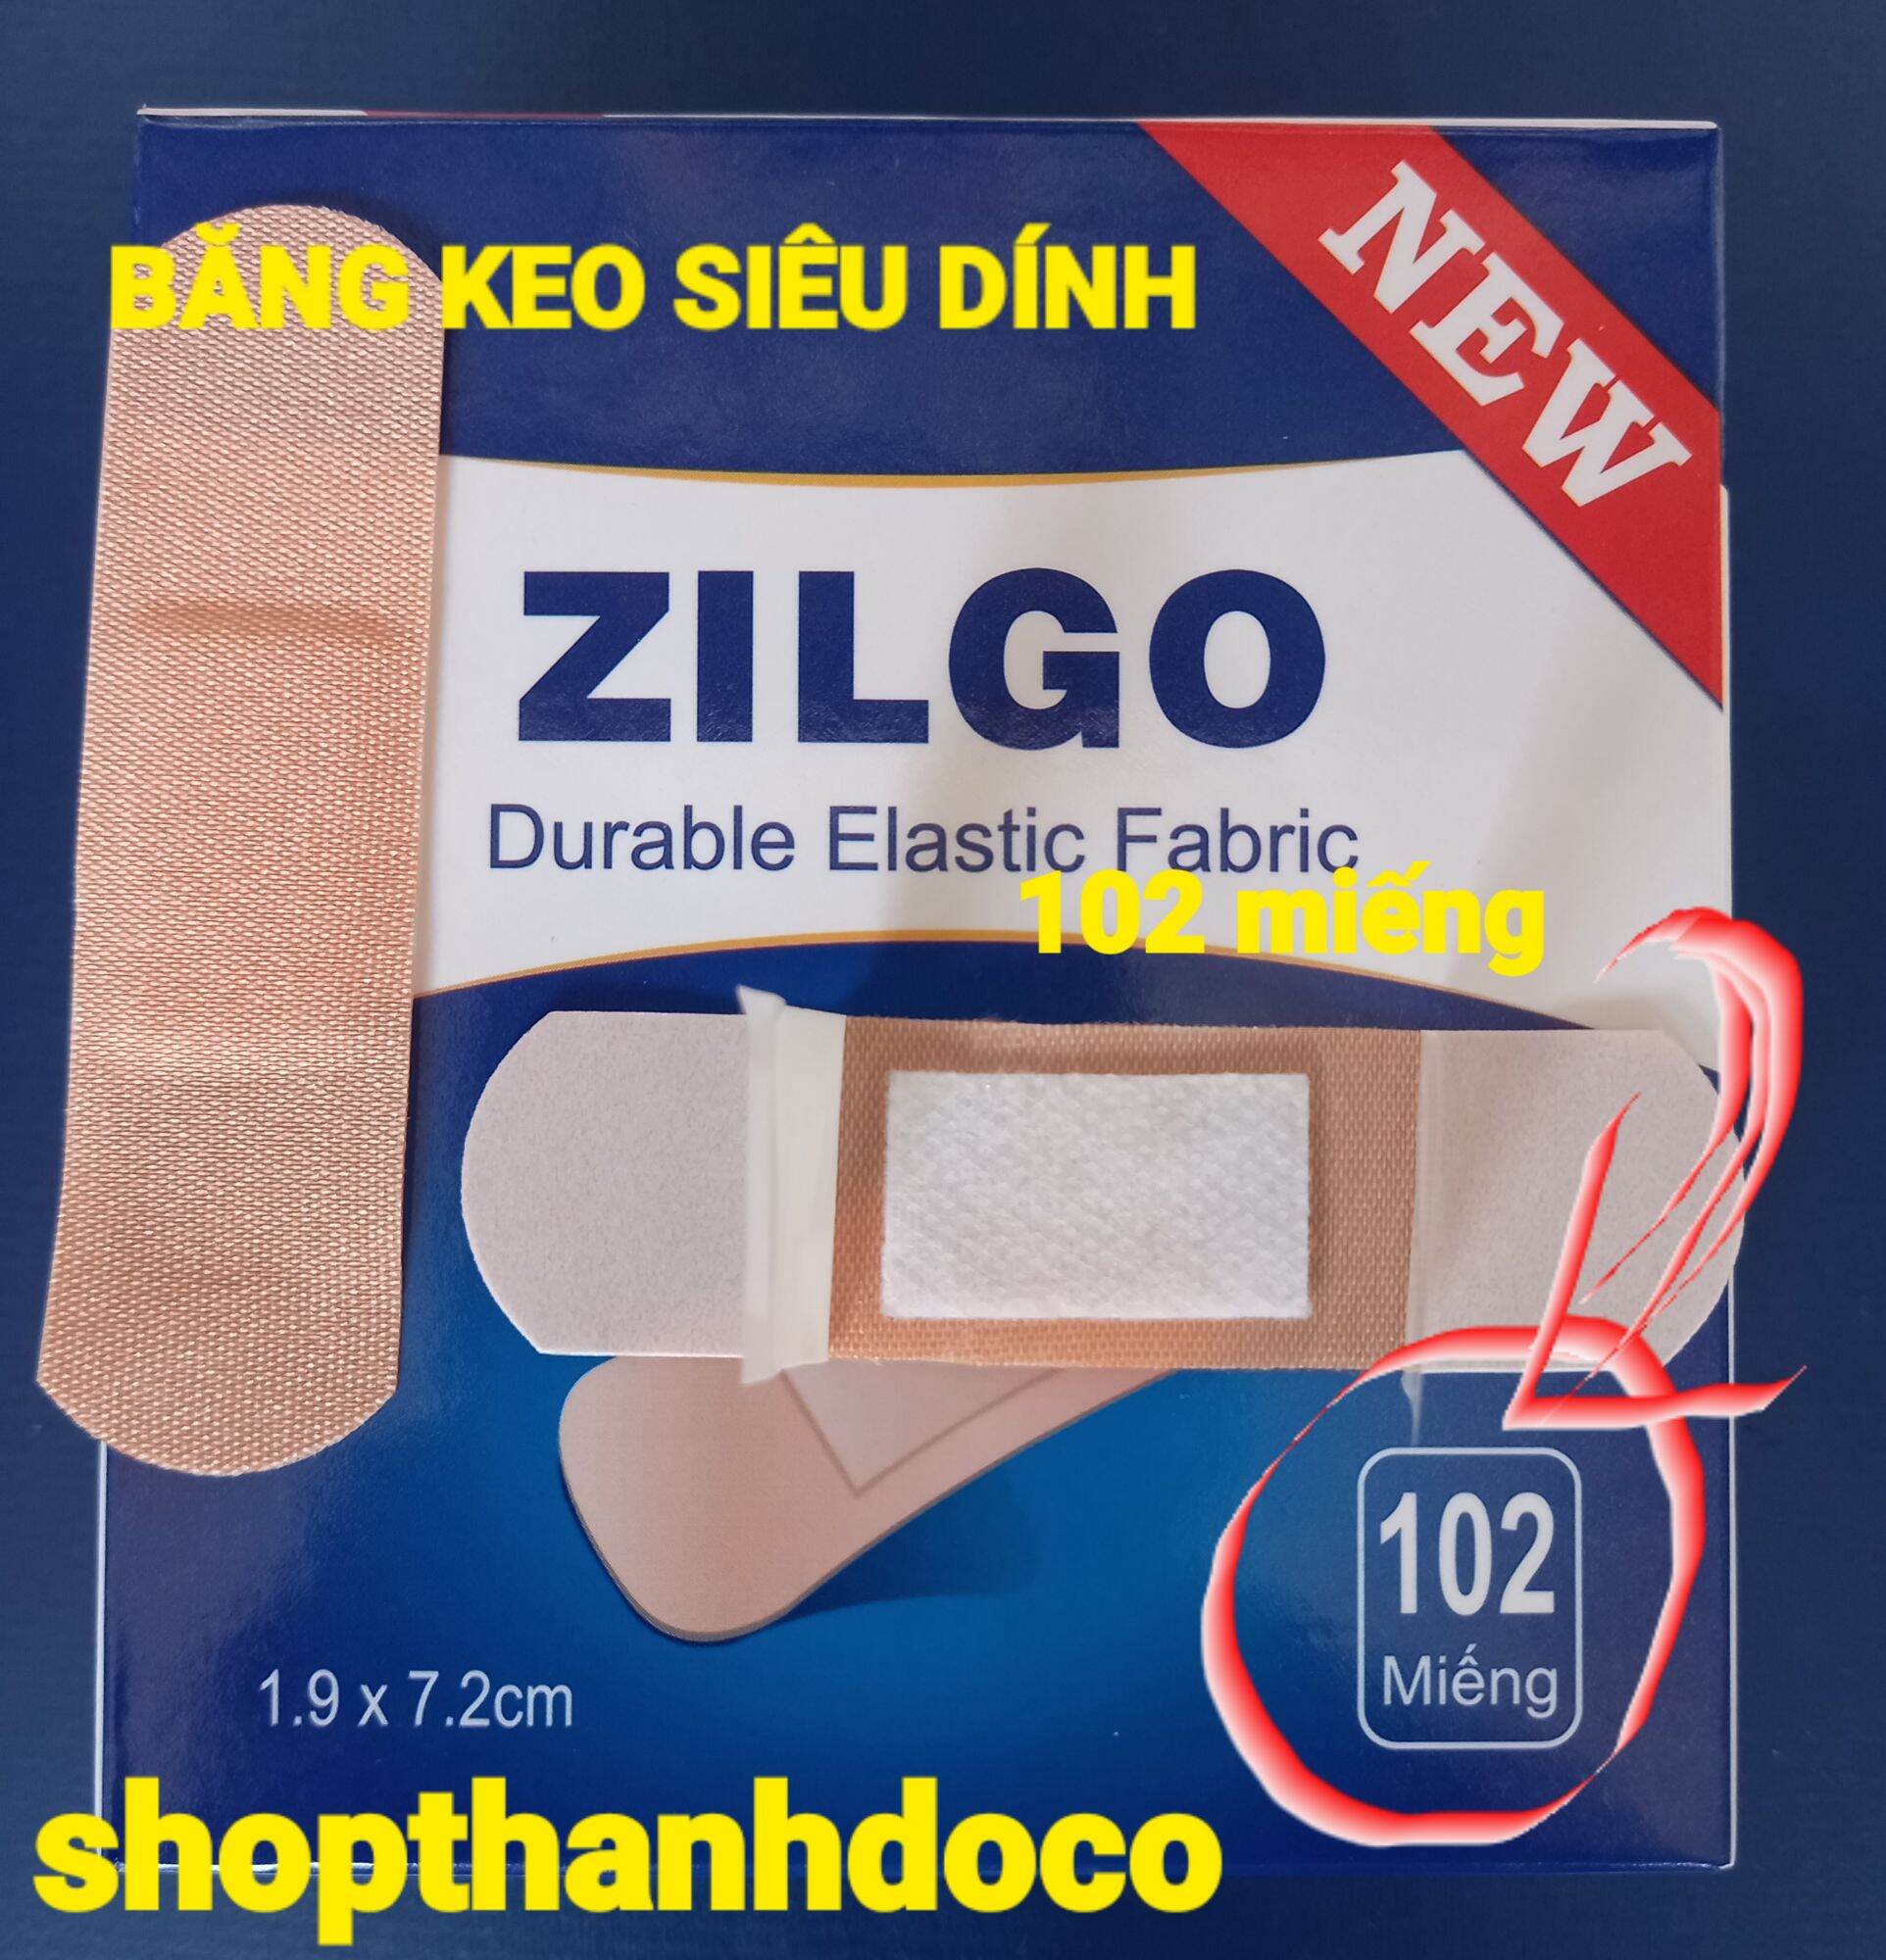 Băng keo cá nhân zilgo chịu được nước 1 hộp 102 miếng  siêu dính - ảnh sản phẩm 1